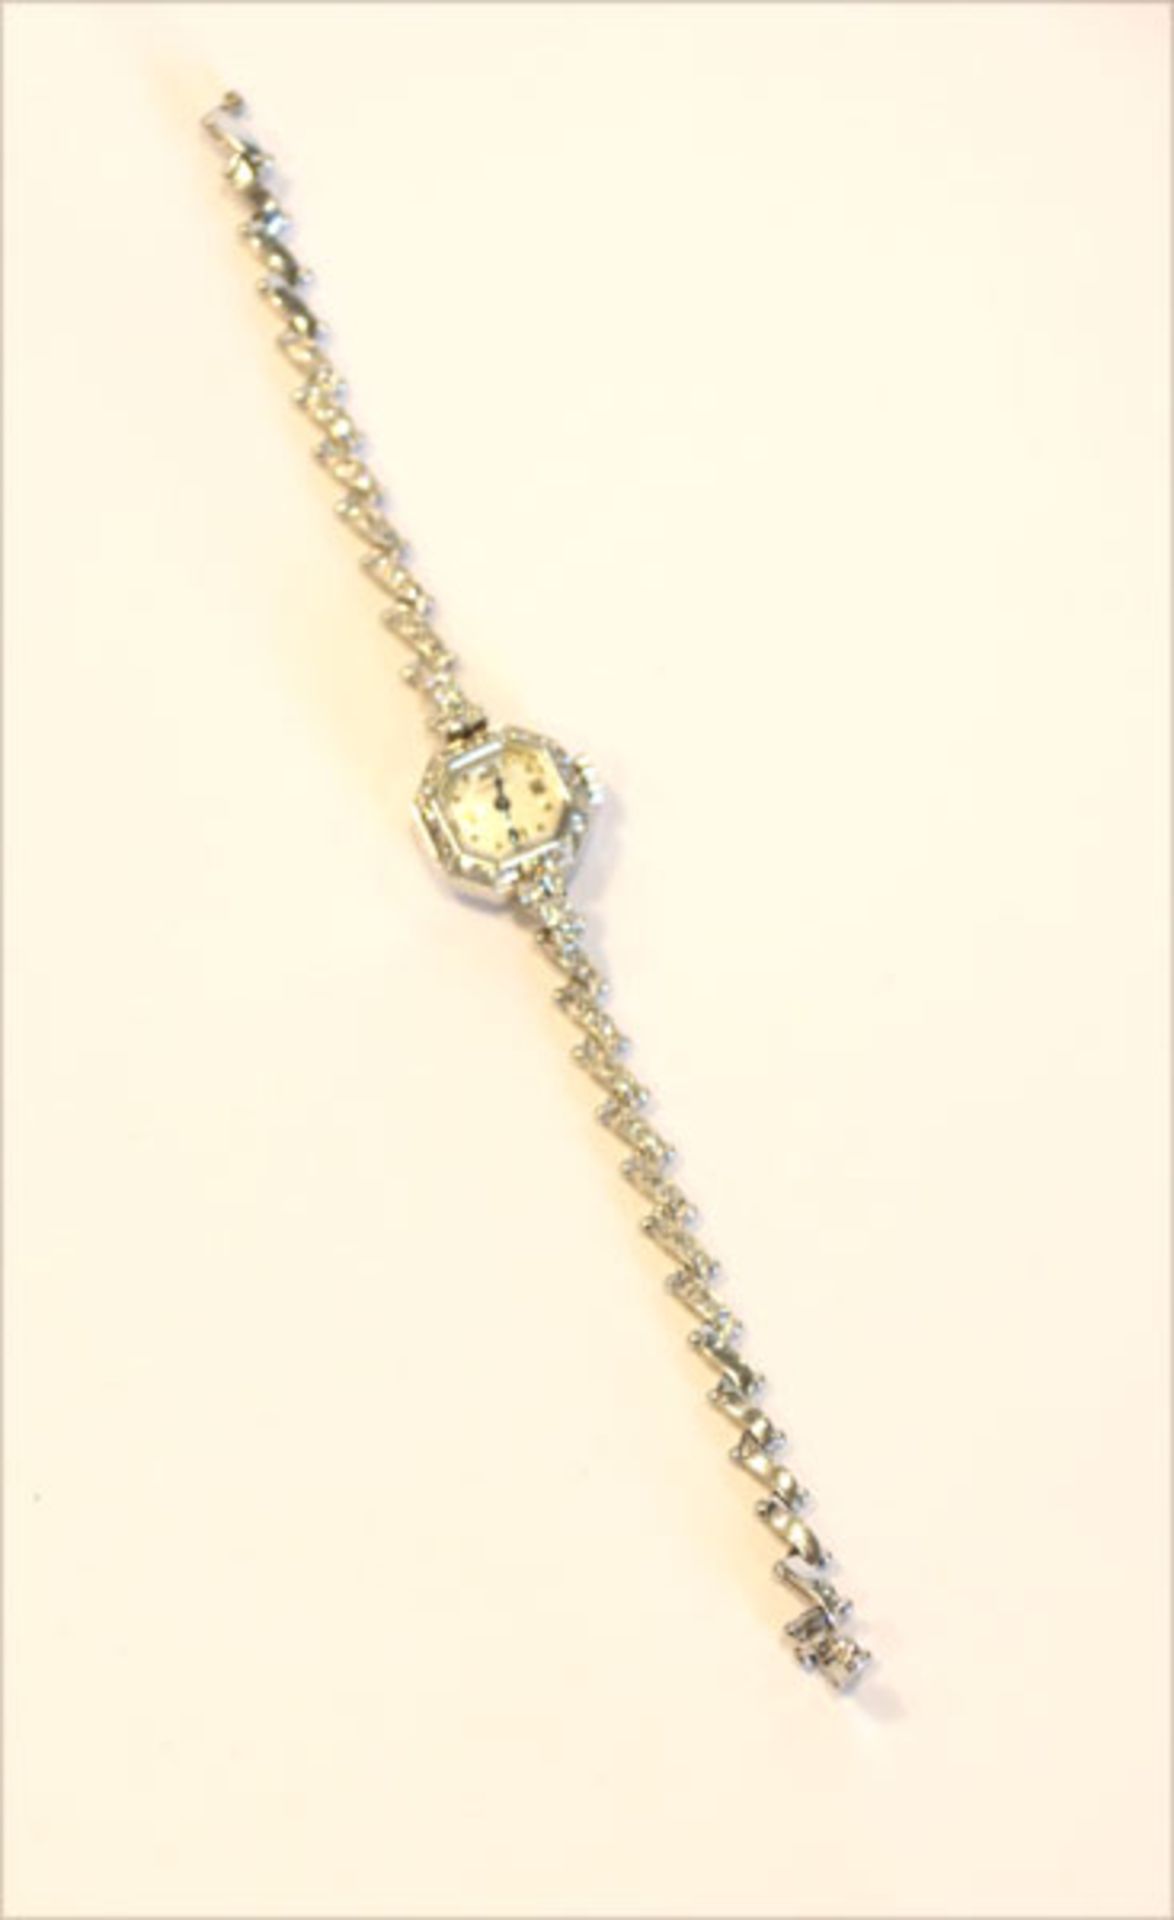 Gübelin Damen-Armbanduhr, 18 k Weißgold mit Diamanten, um 1920, 20 gr., L 16 cm, intakt